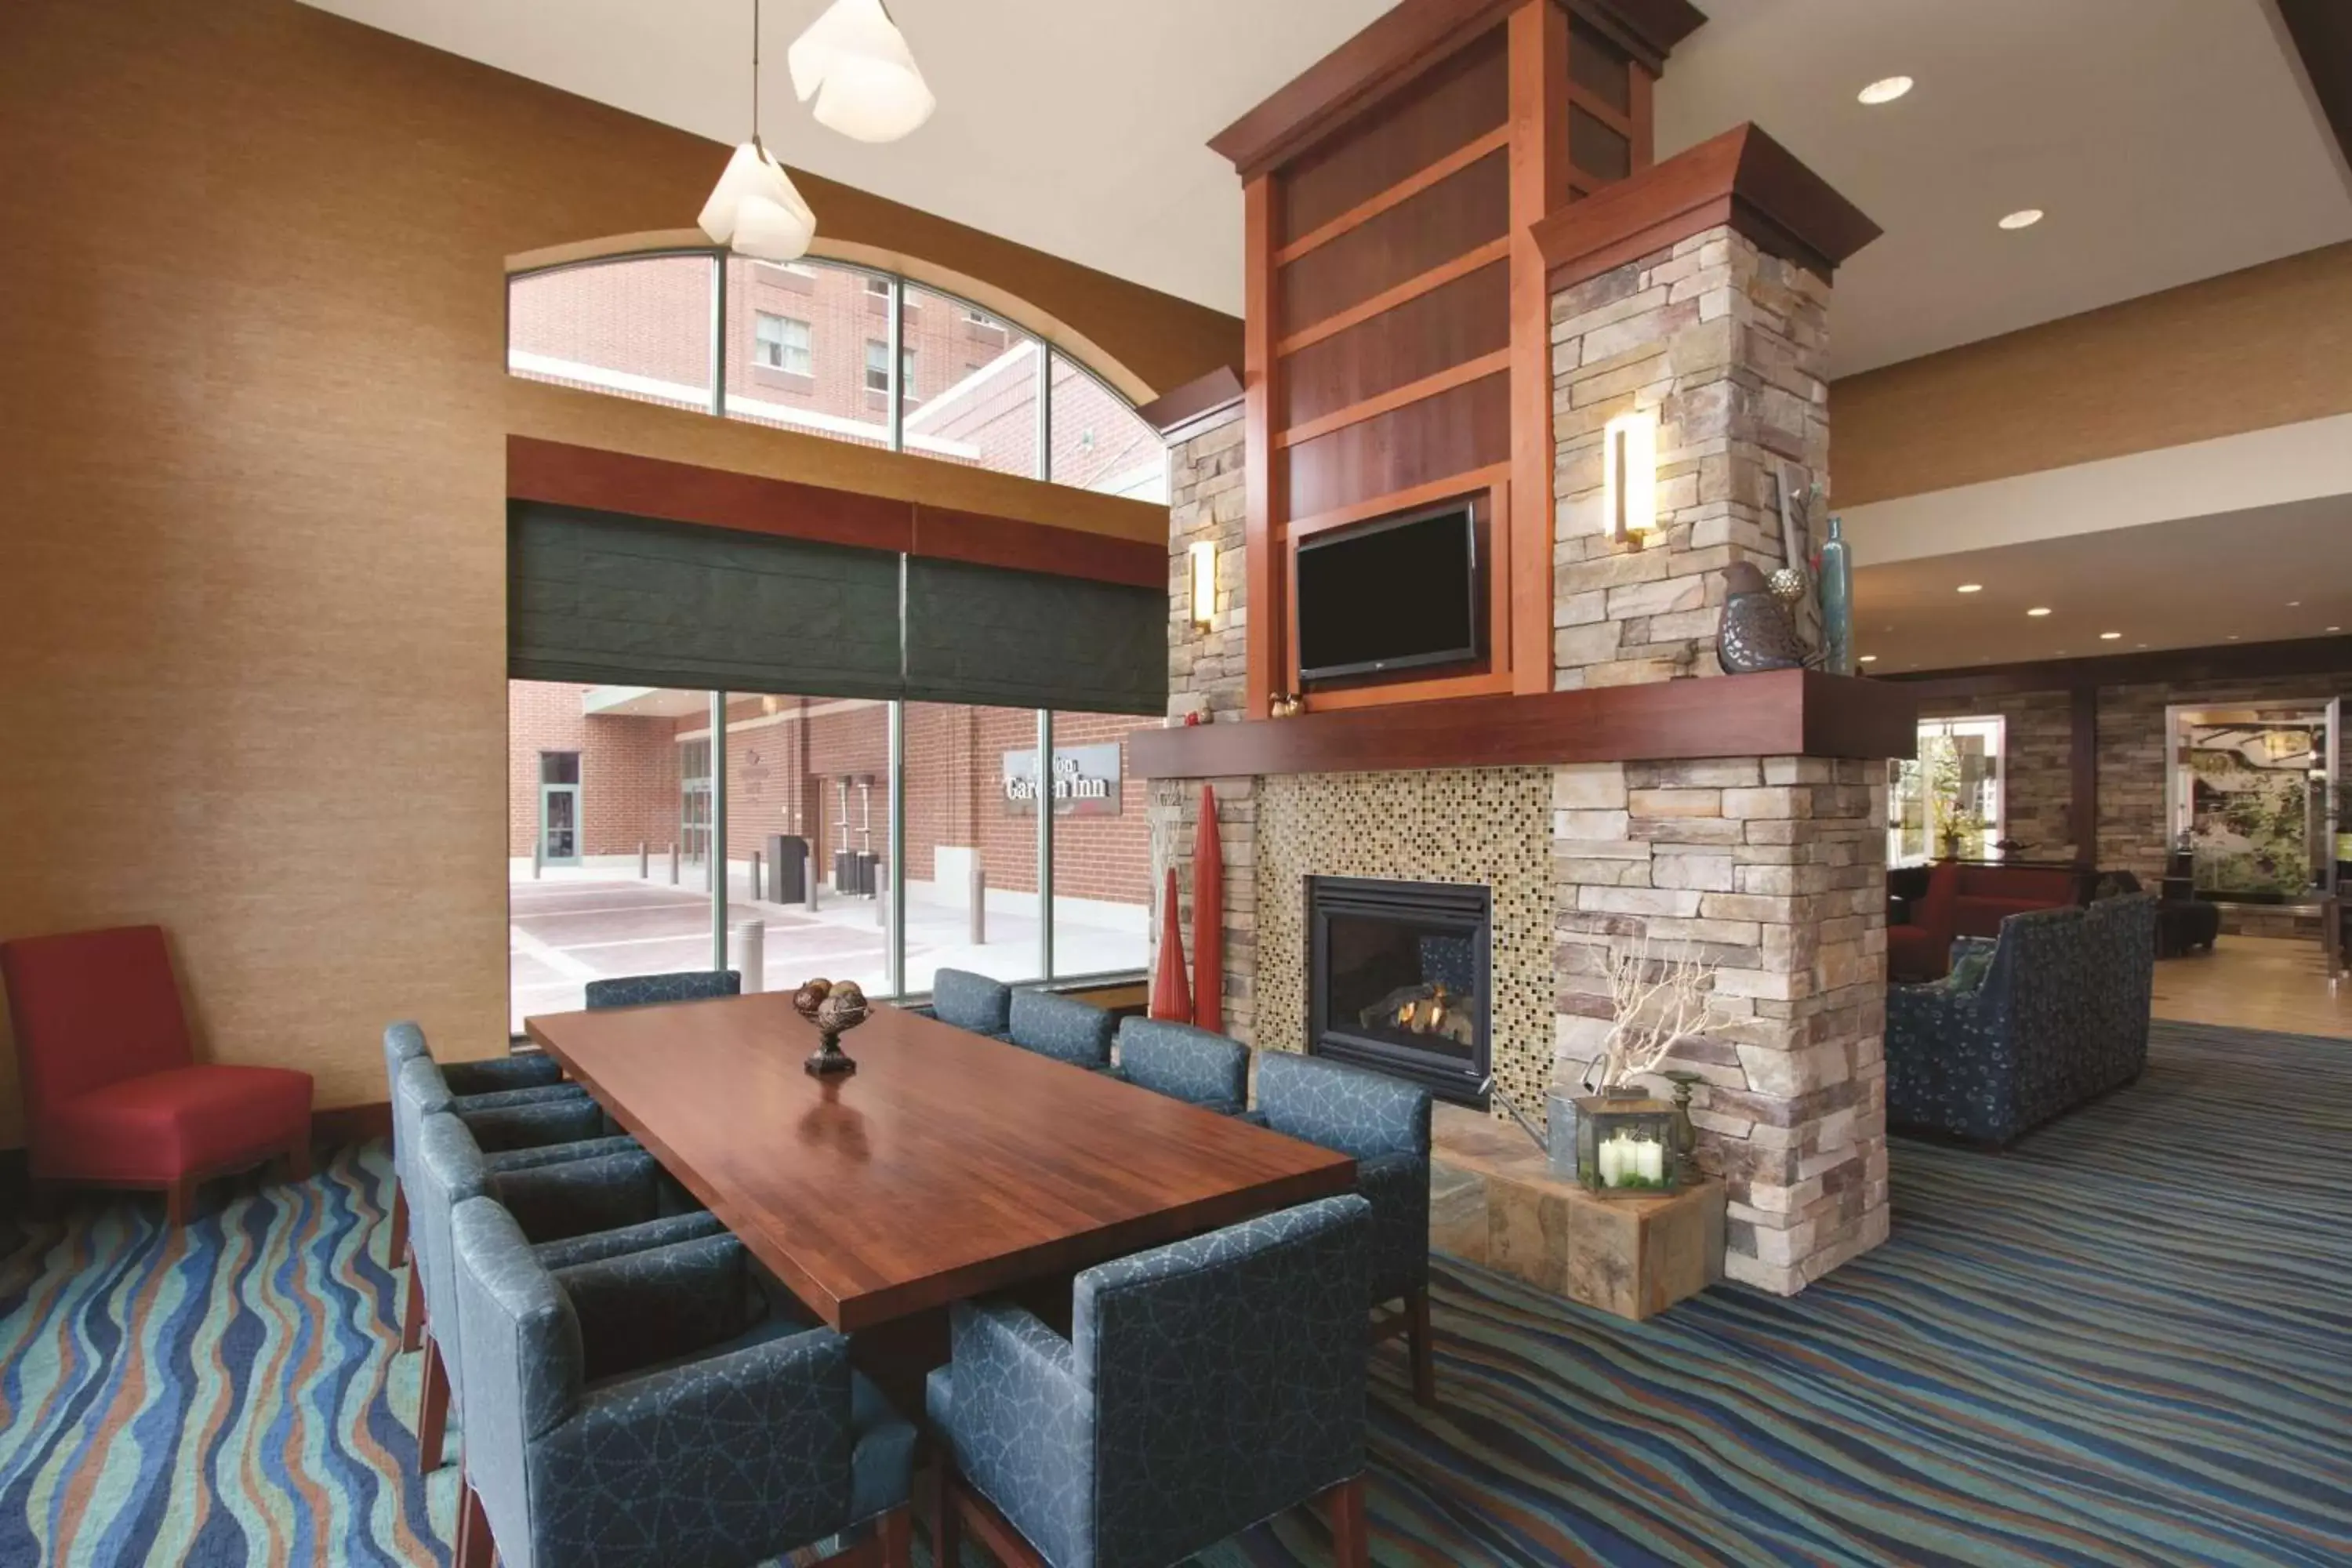 Lobby or reception, Restaurant/Places to Eat in Hilton Garden Inn Oklahoma City/Bricktown